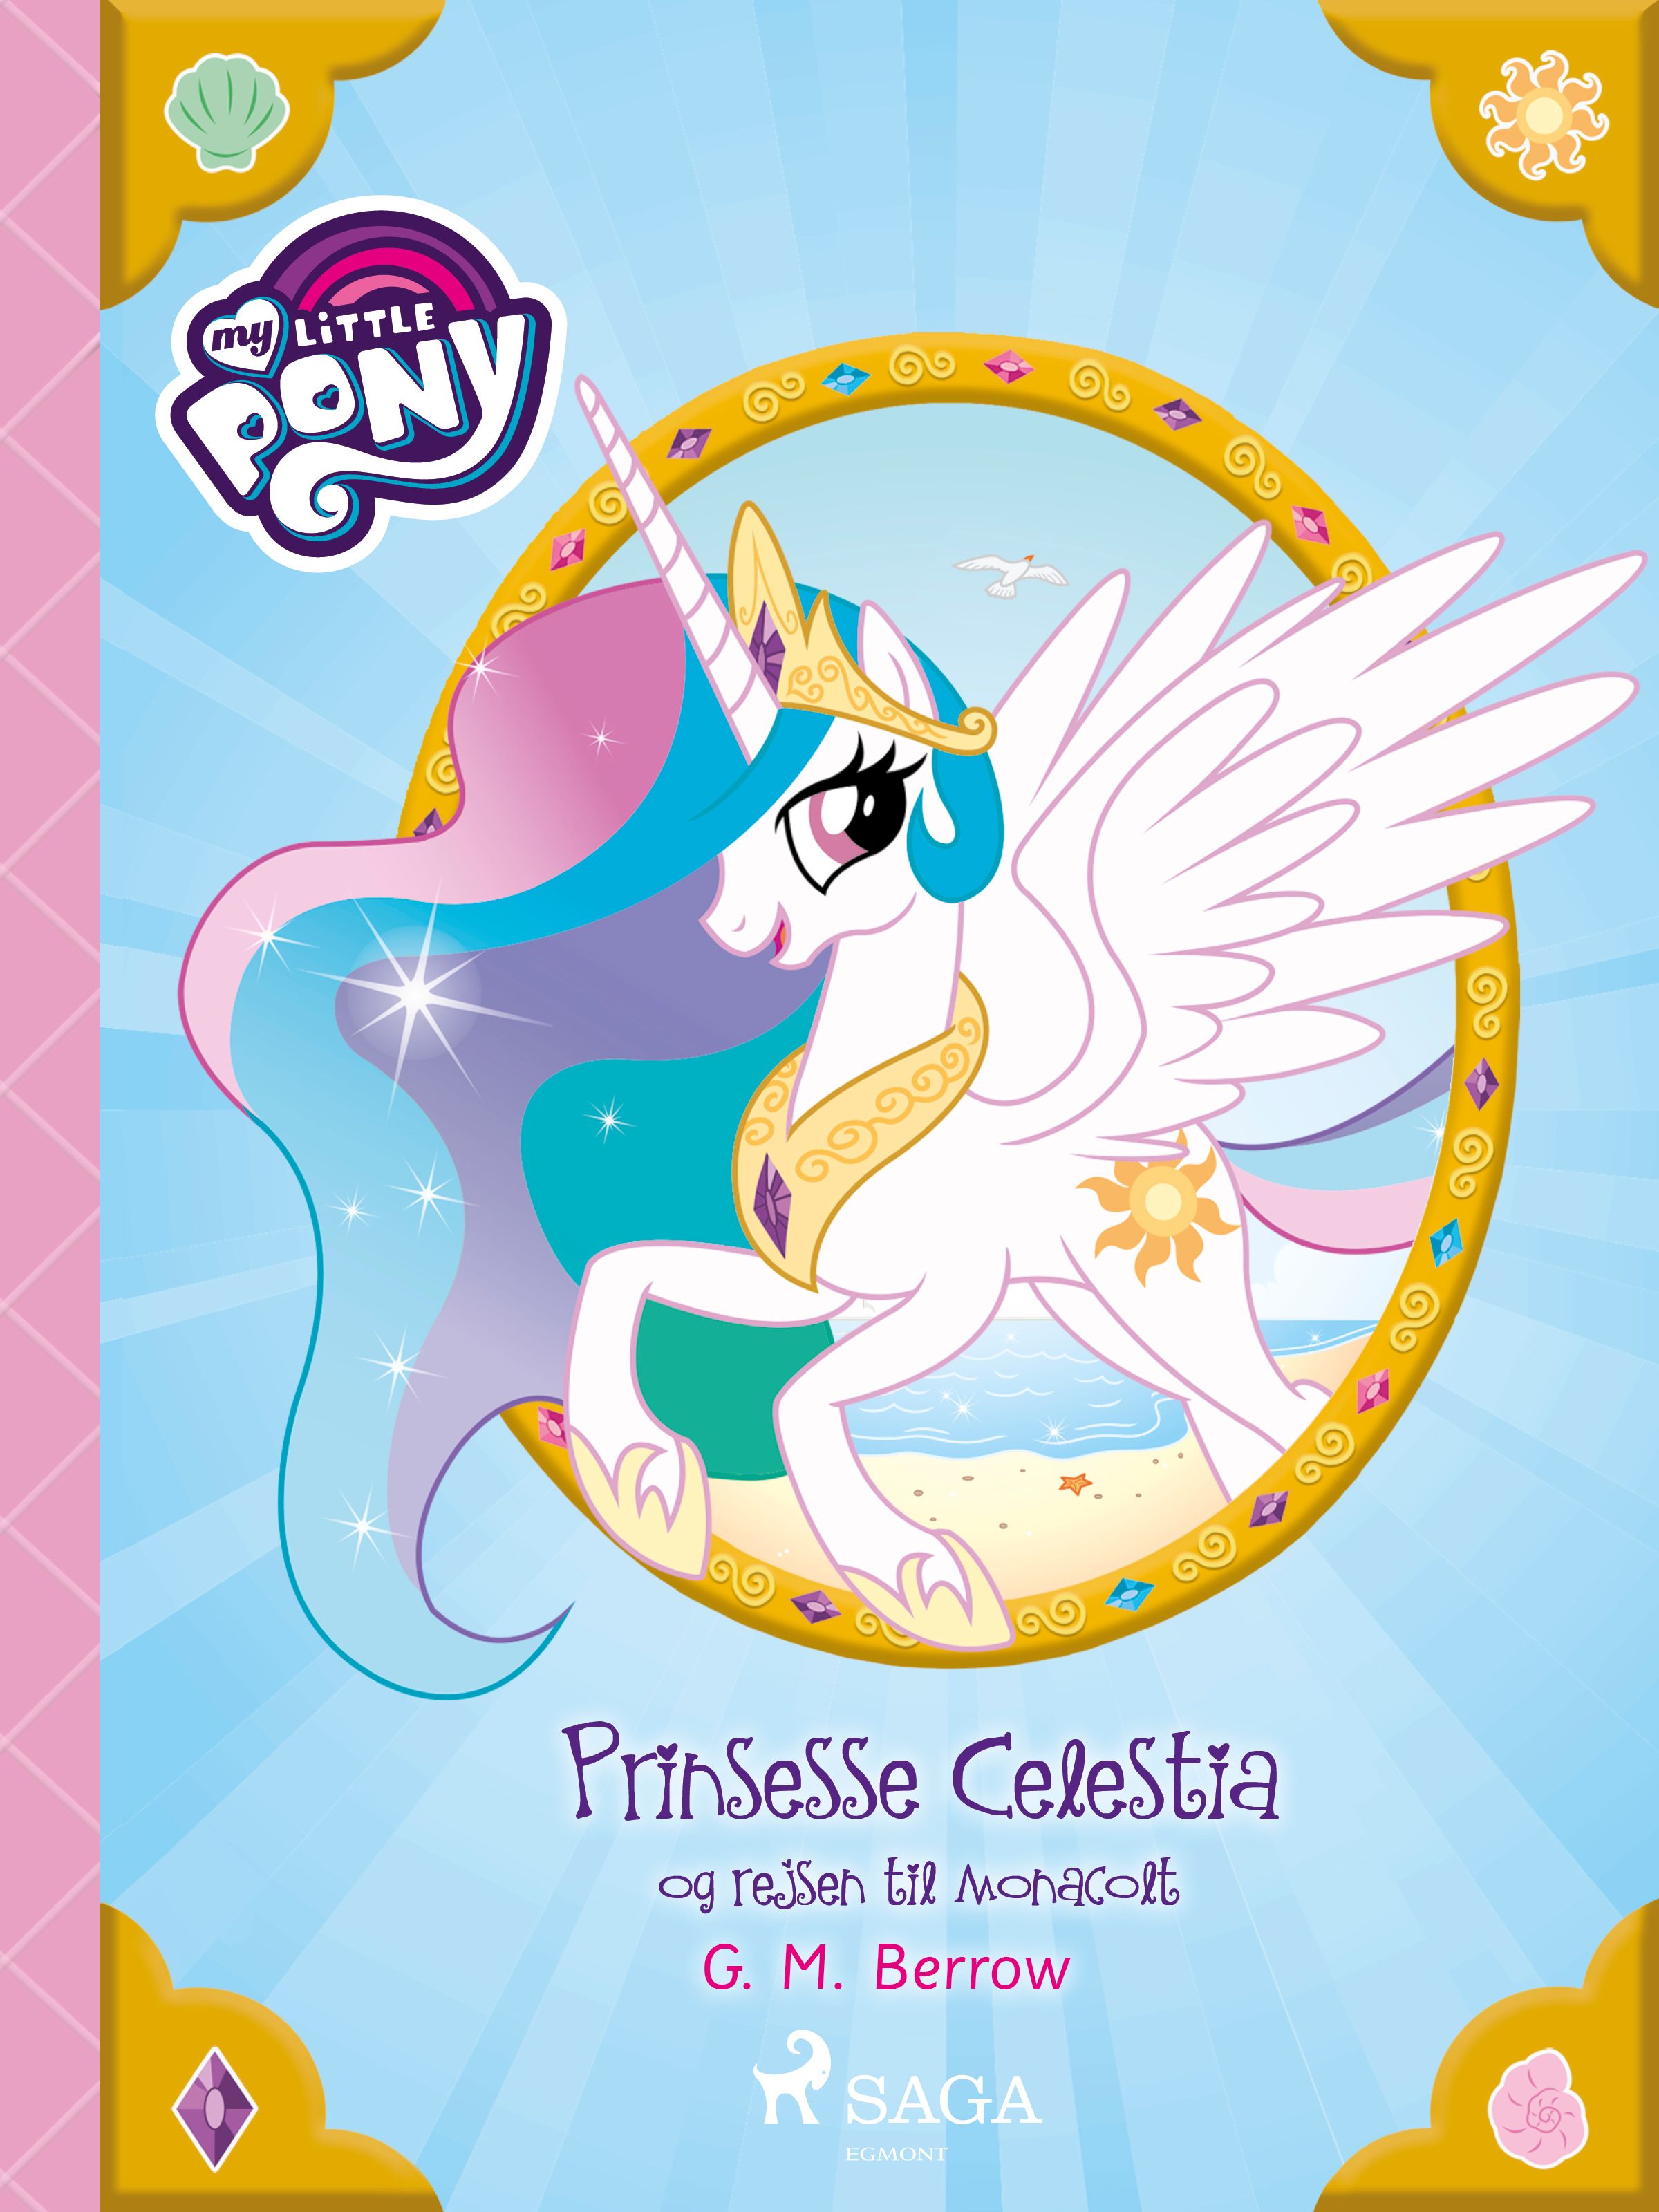 My Little Pony - Prinsesse Celestia og rejsen til Monacolt, eBook by G. M. Berrow